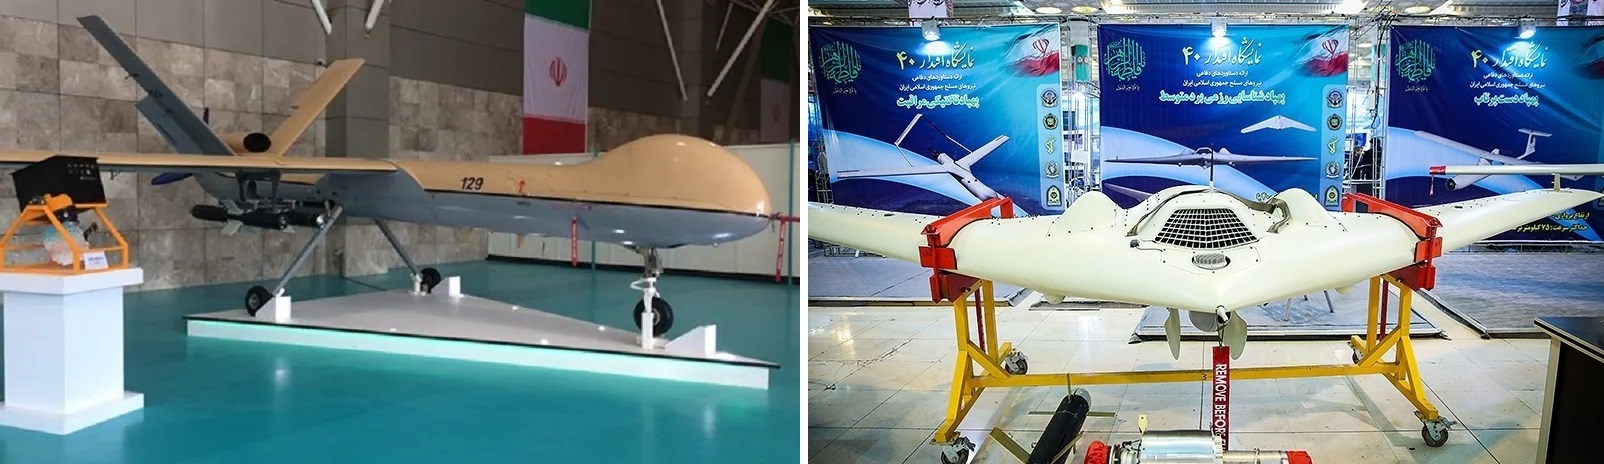 Rosja rozważa zakup irańskich dronów Shahed, które mogą przenosić precyzyjnie naprowadzane pociski